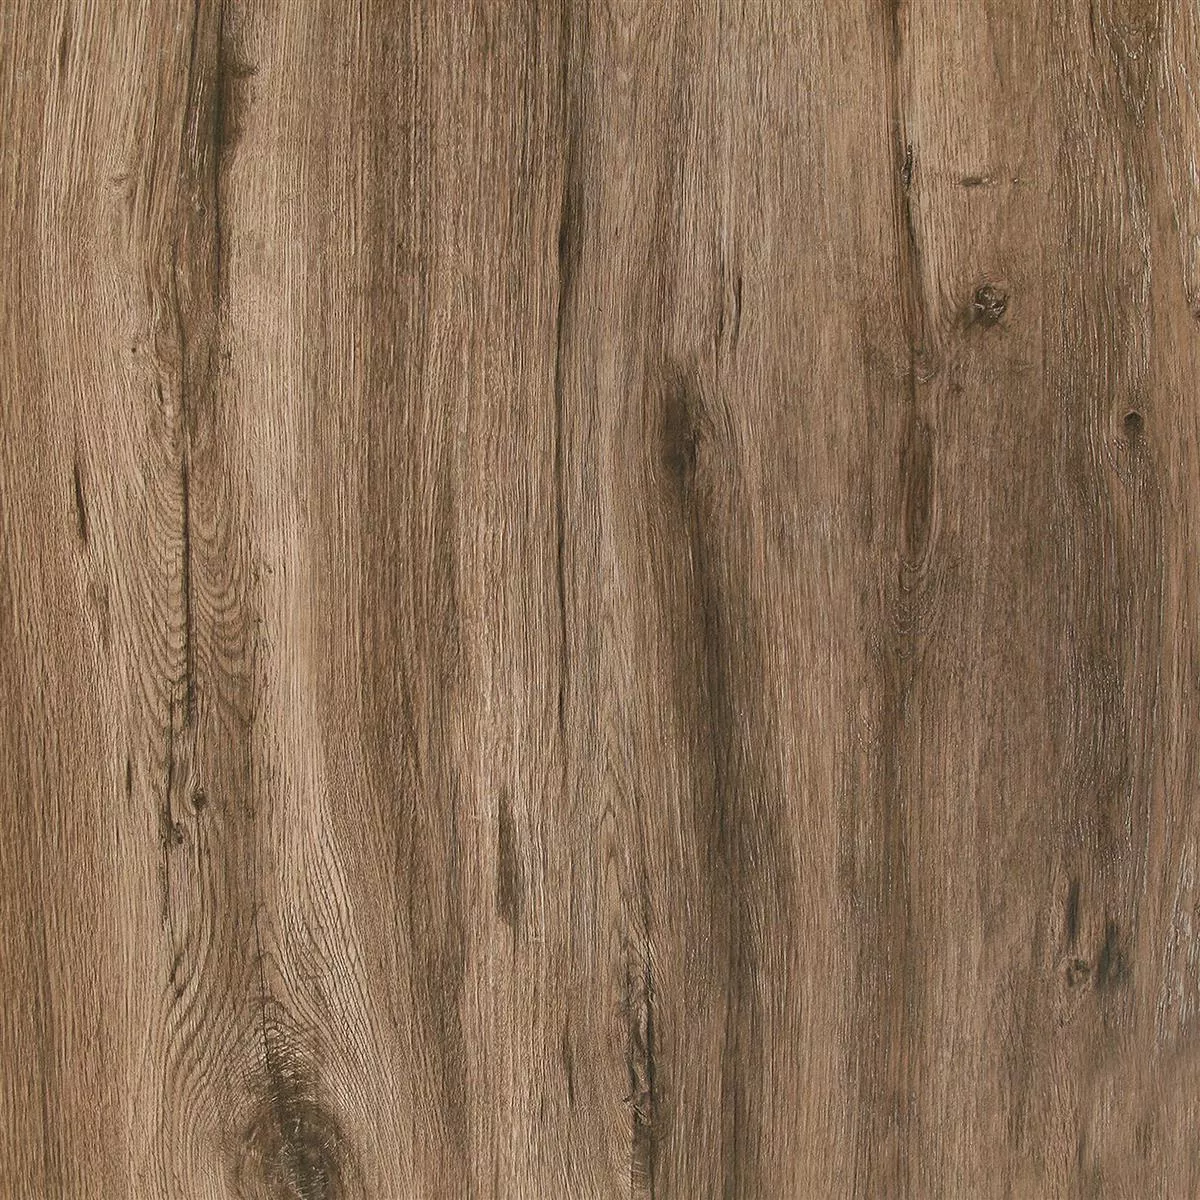 Terrassenplatten Starwood Holzoptik Ebony 60x60cm